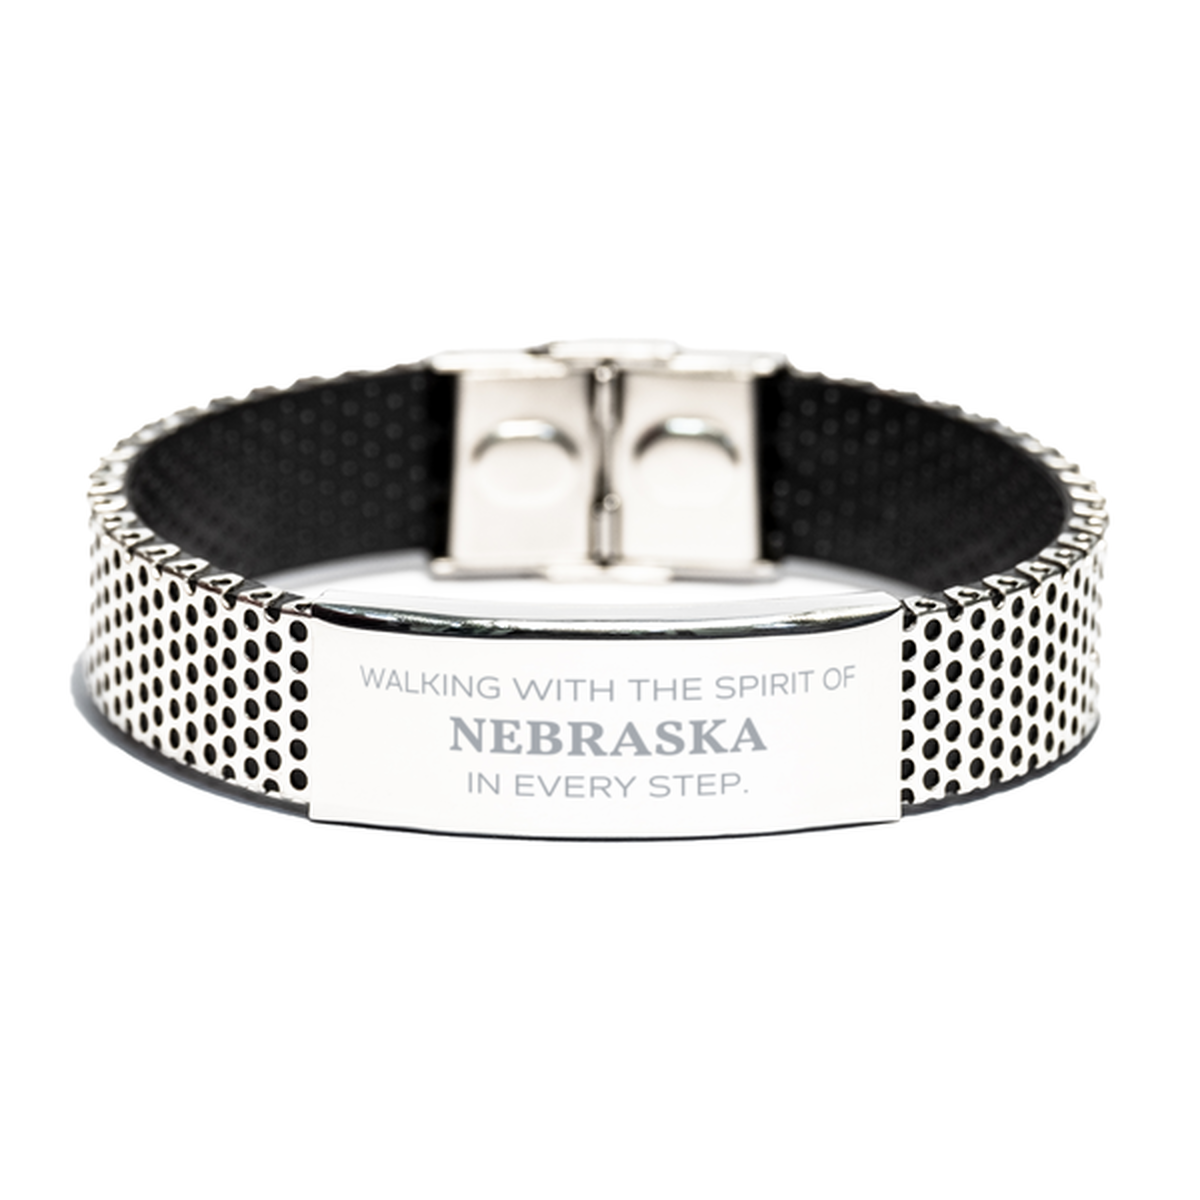 Nebraska Gifts, Walking with the spirit, Love Nebraska Birthday Christmas Stainless Steel Bracelet For Nebraska People, Men, Women, Friends